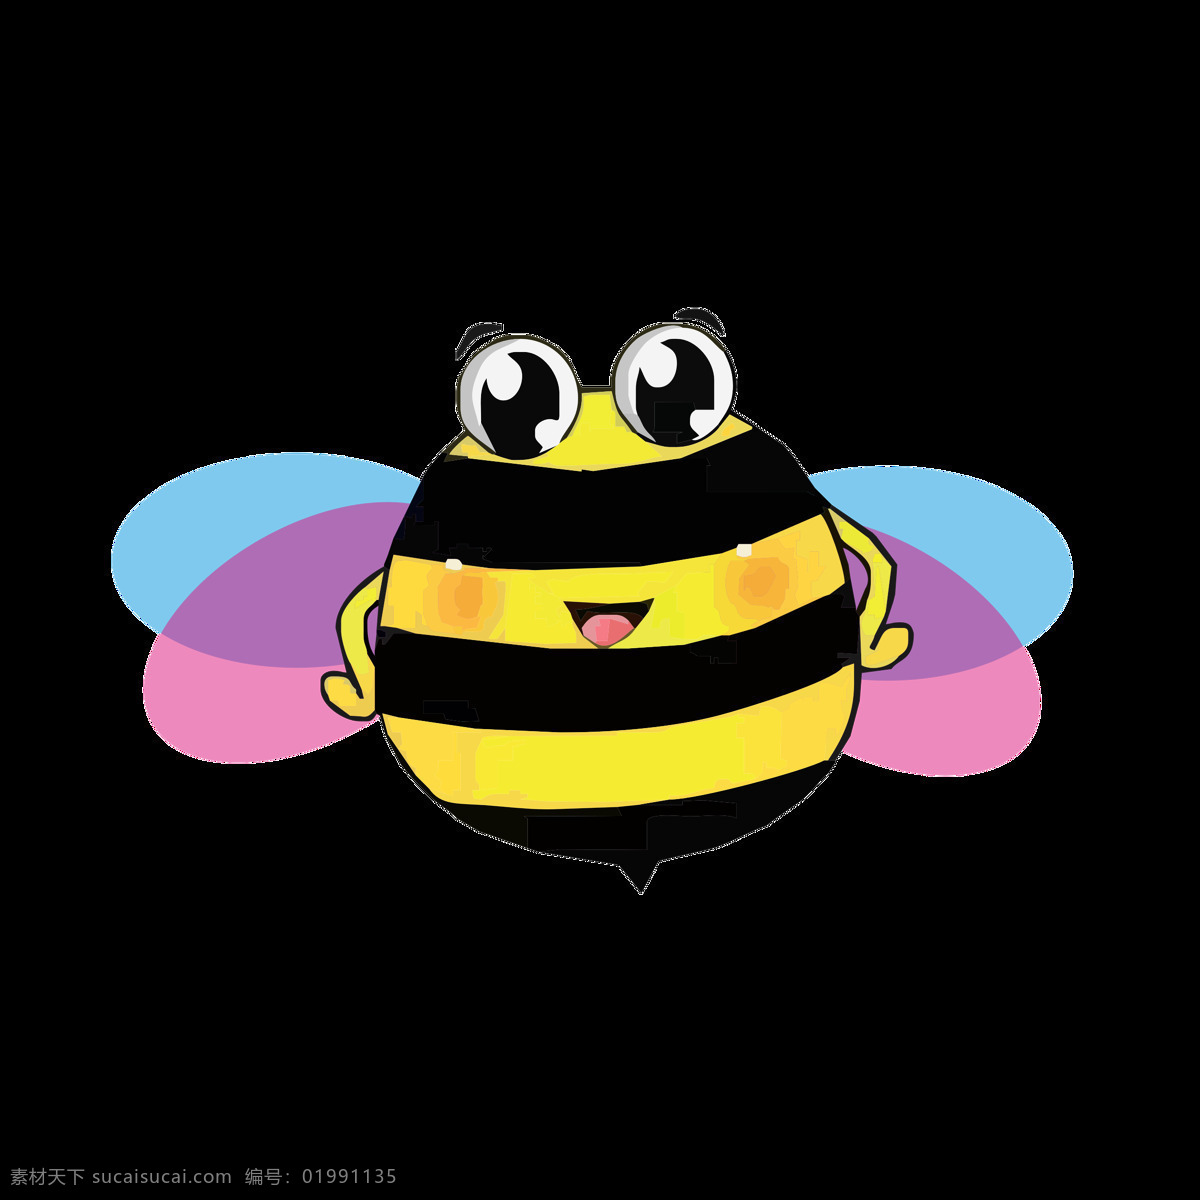 手绘 小 蜜蜂 卡通 形象设计 小蜜蜂 卡通形象设计 蜜蜂元素 ip形象